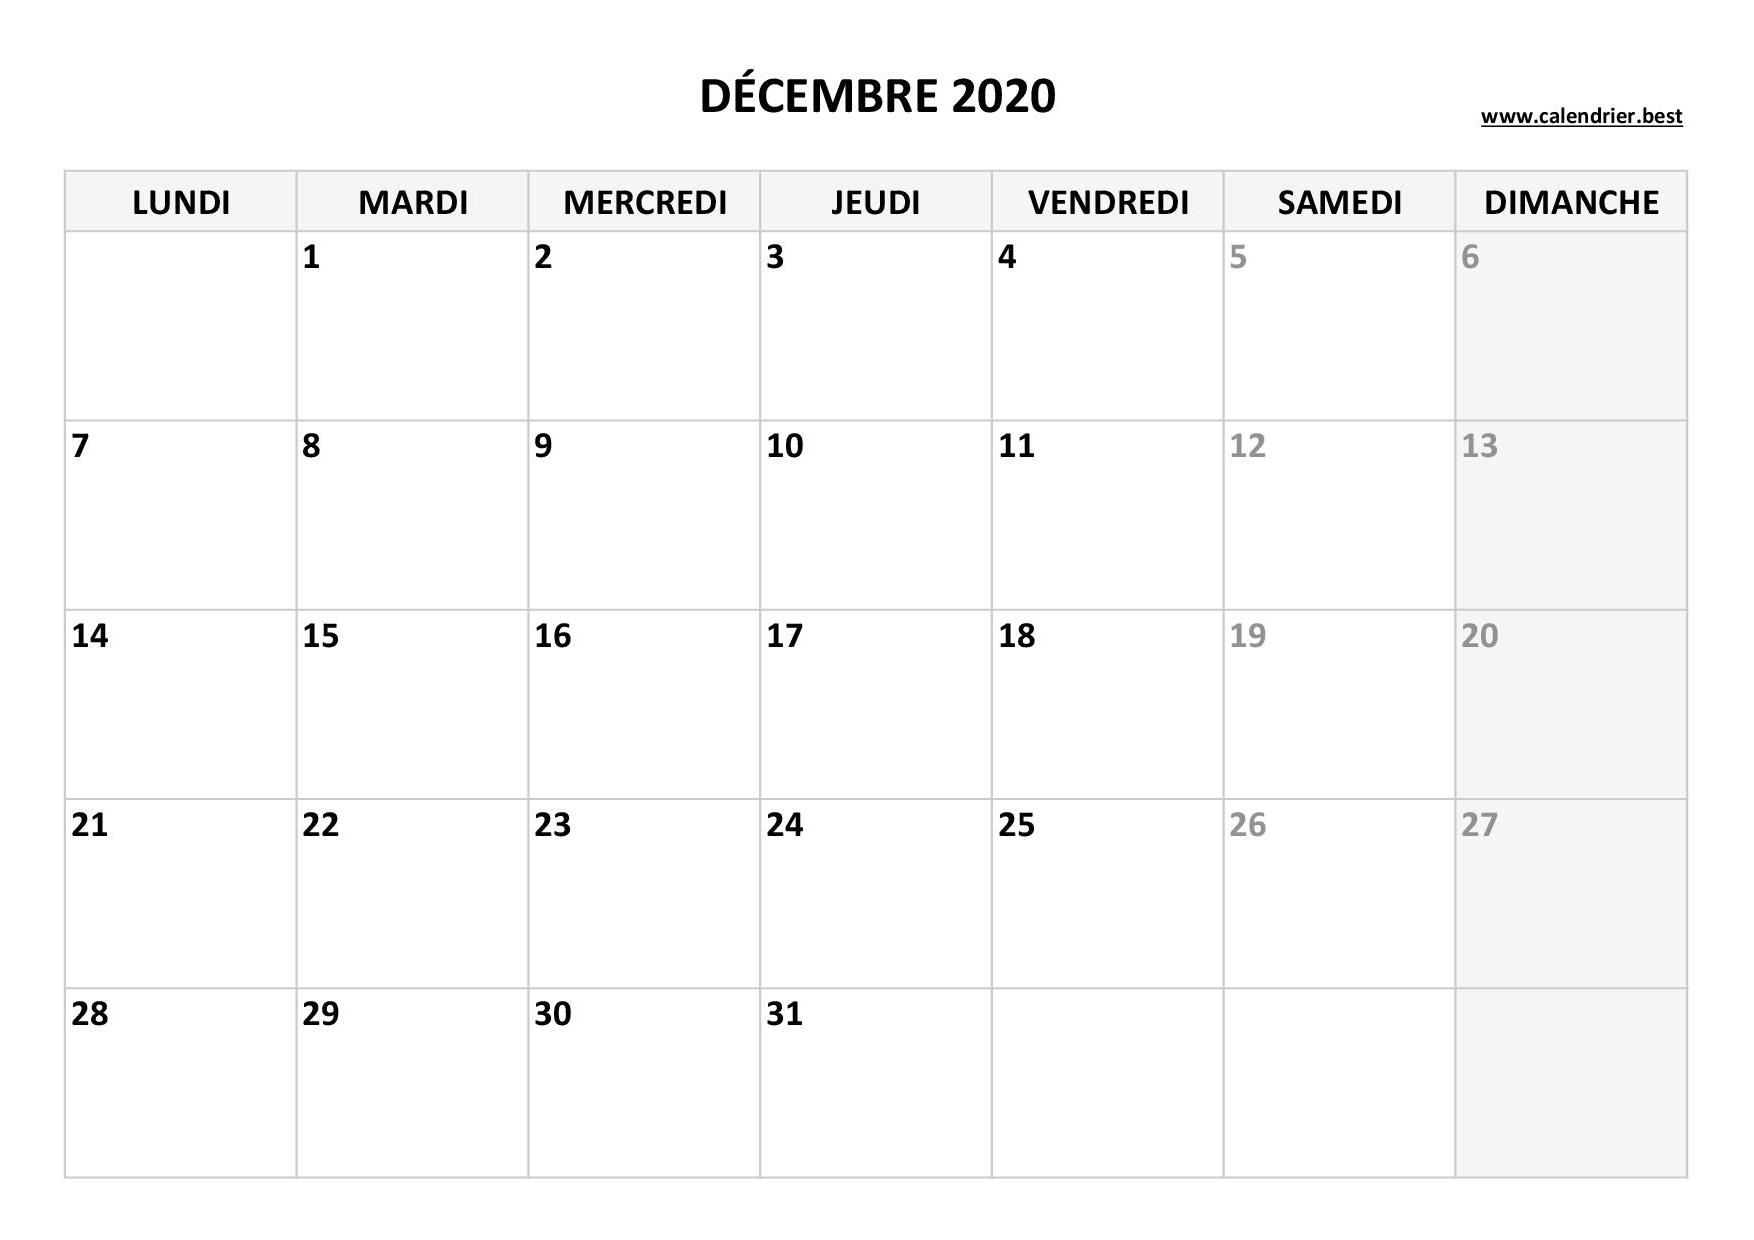 Calendrier Décembre 2020 à consulter ou imprimer -Calendrier.best